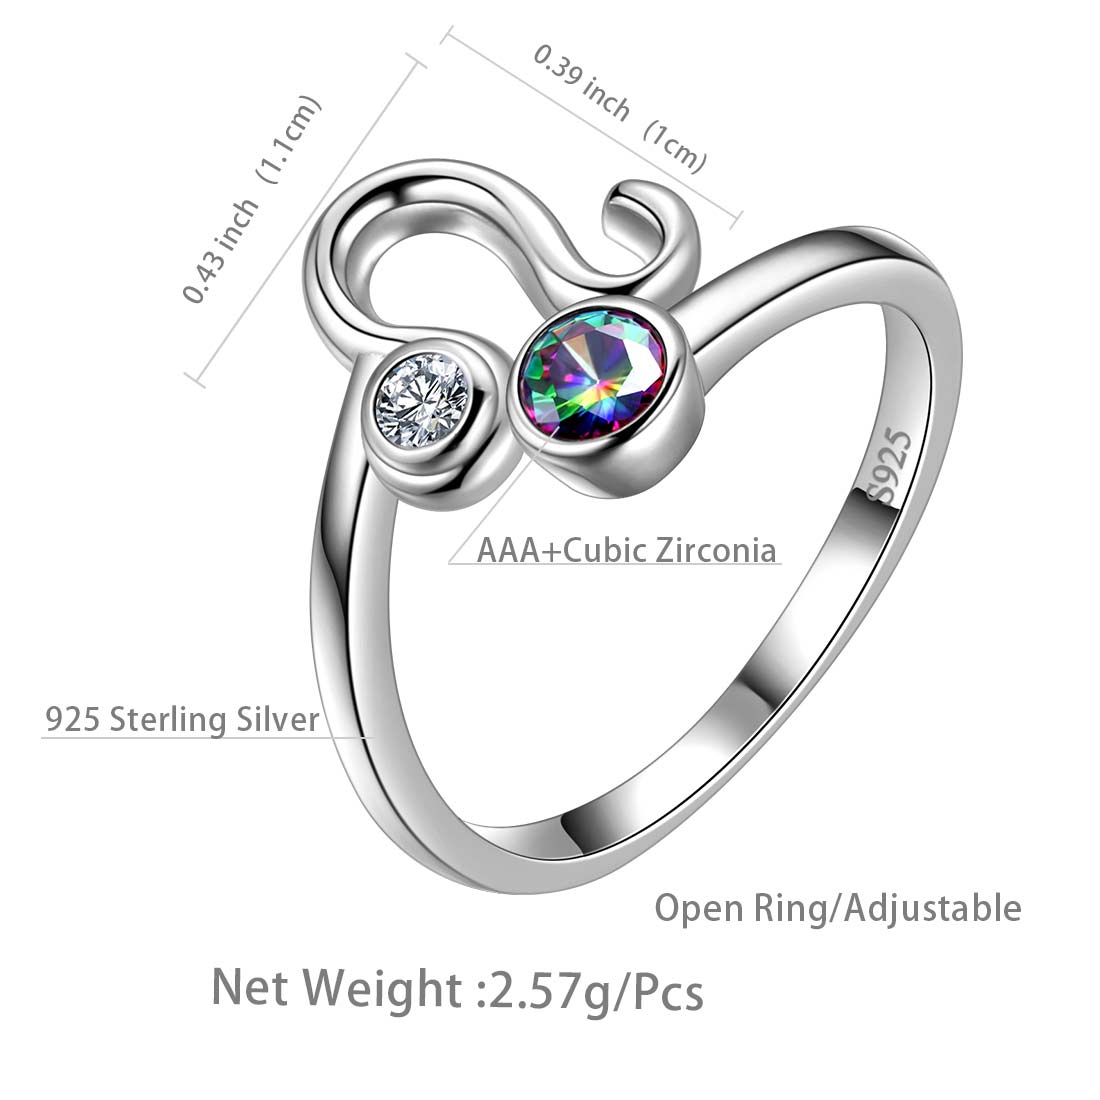 Leo Zodiac Open Rings 925 Sterling Silver - Rings - Aurora Tears Jewelry